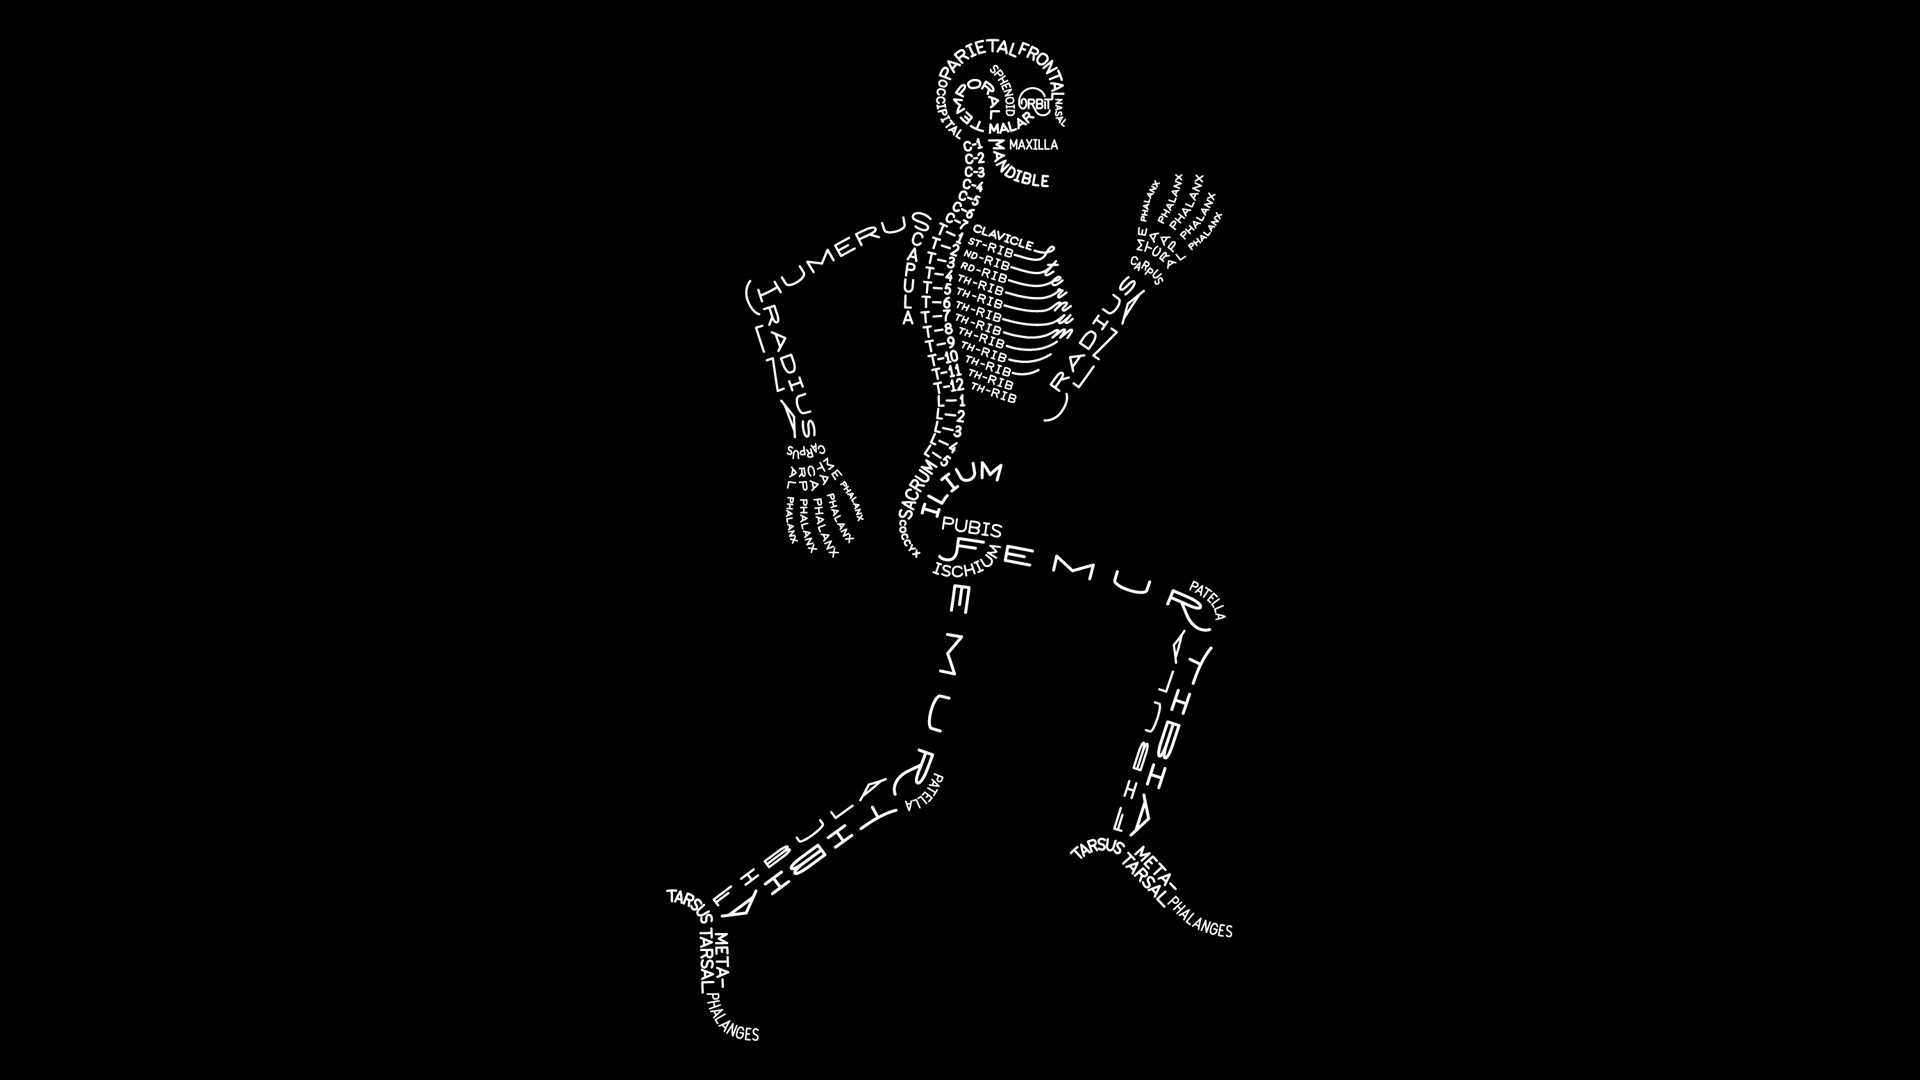 Скелет на черном фоне